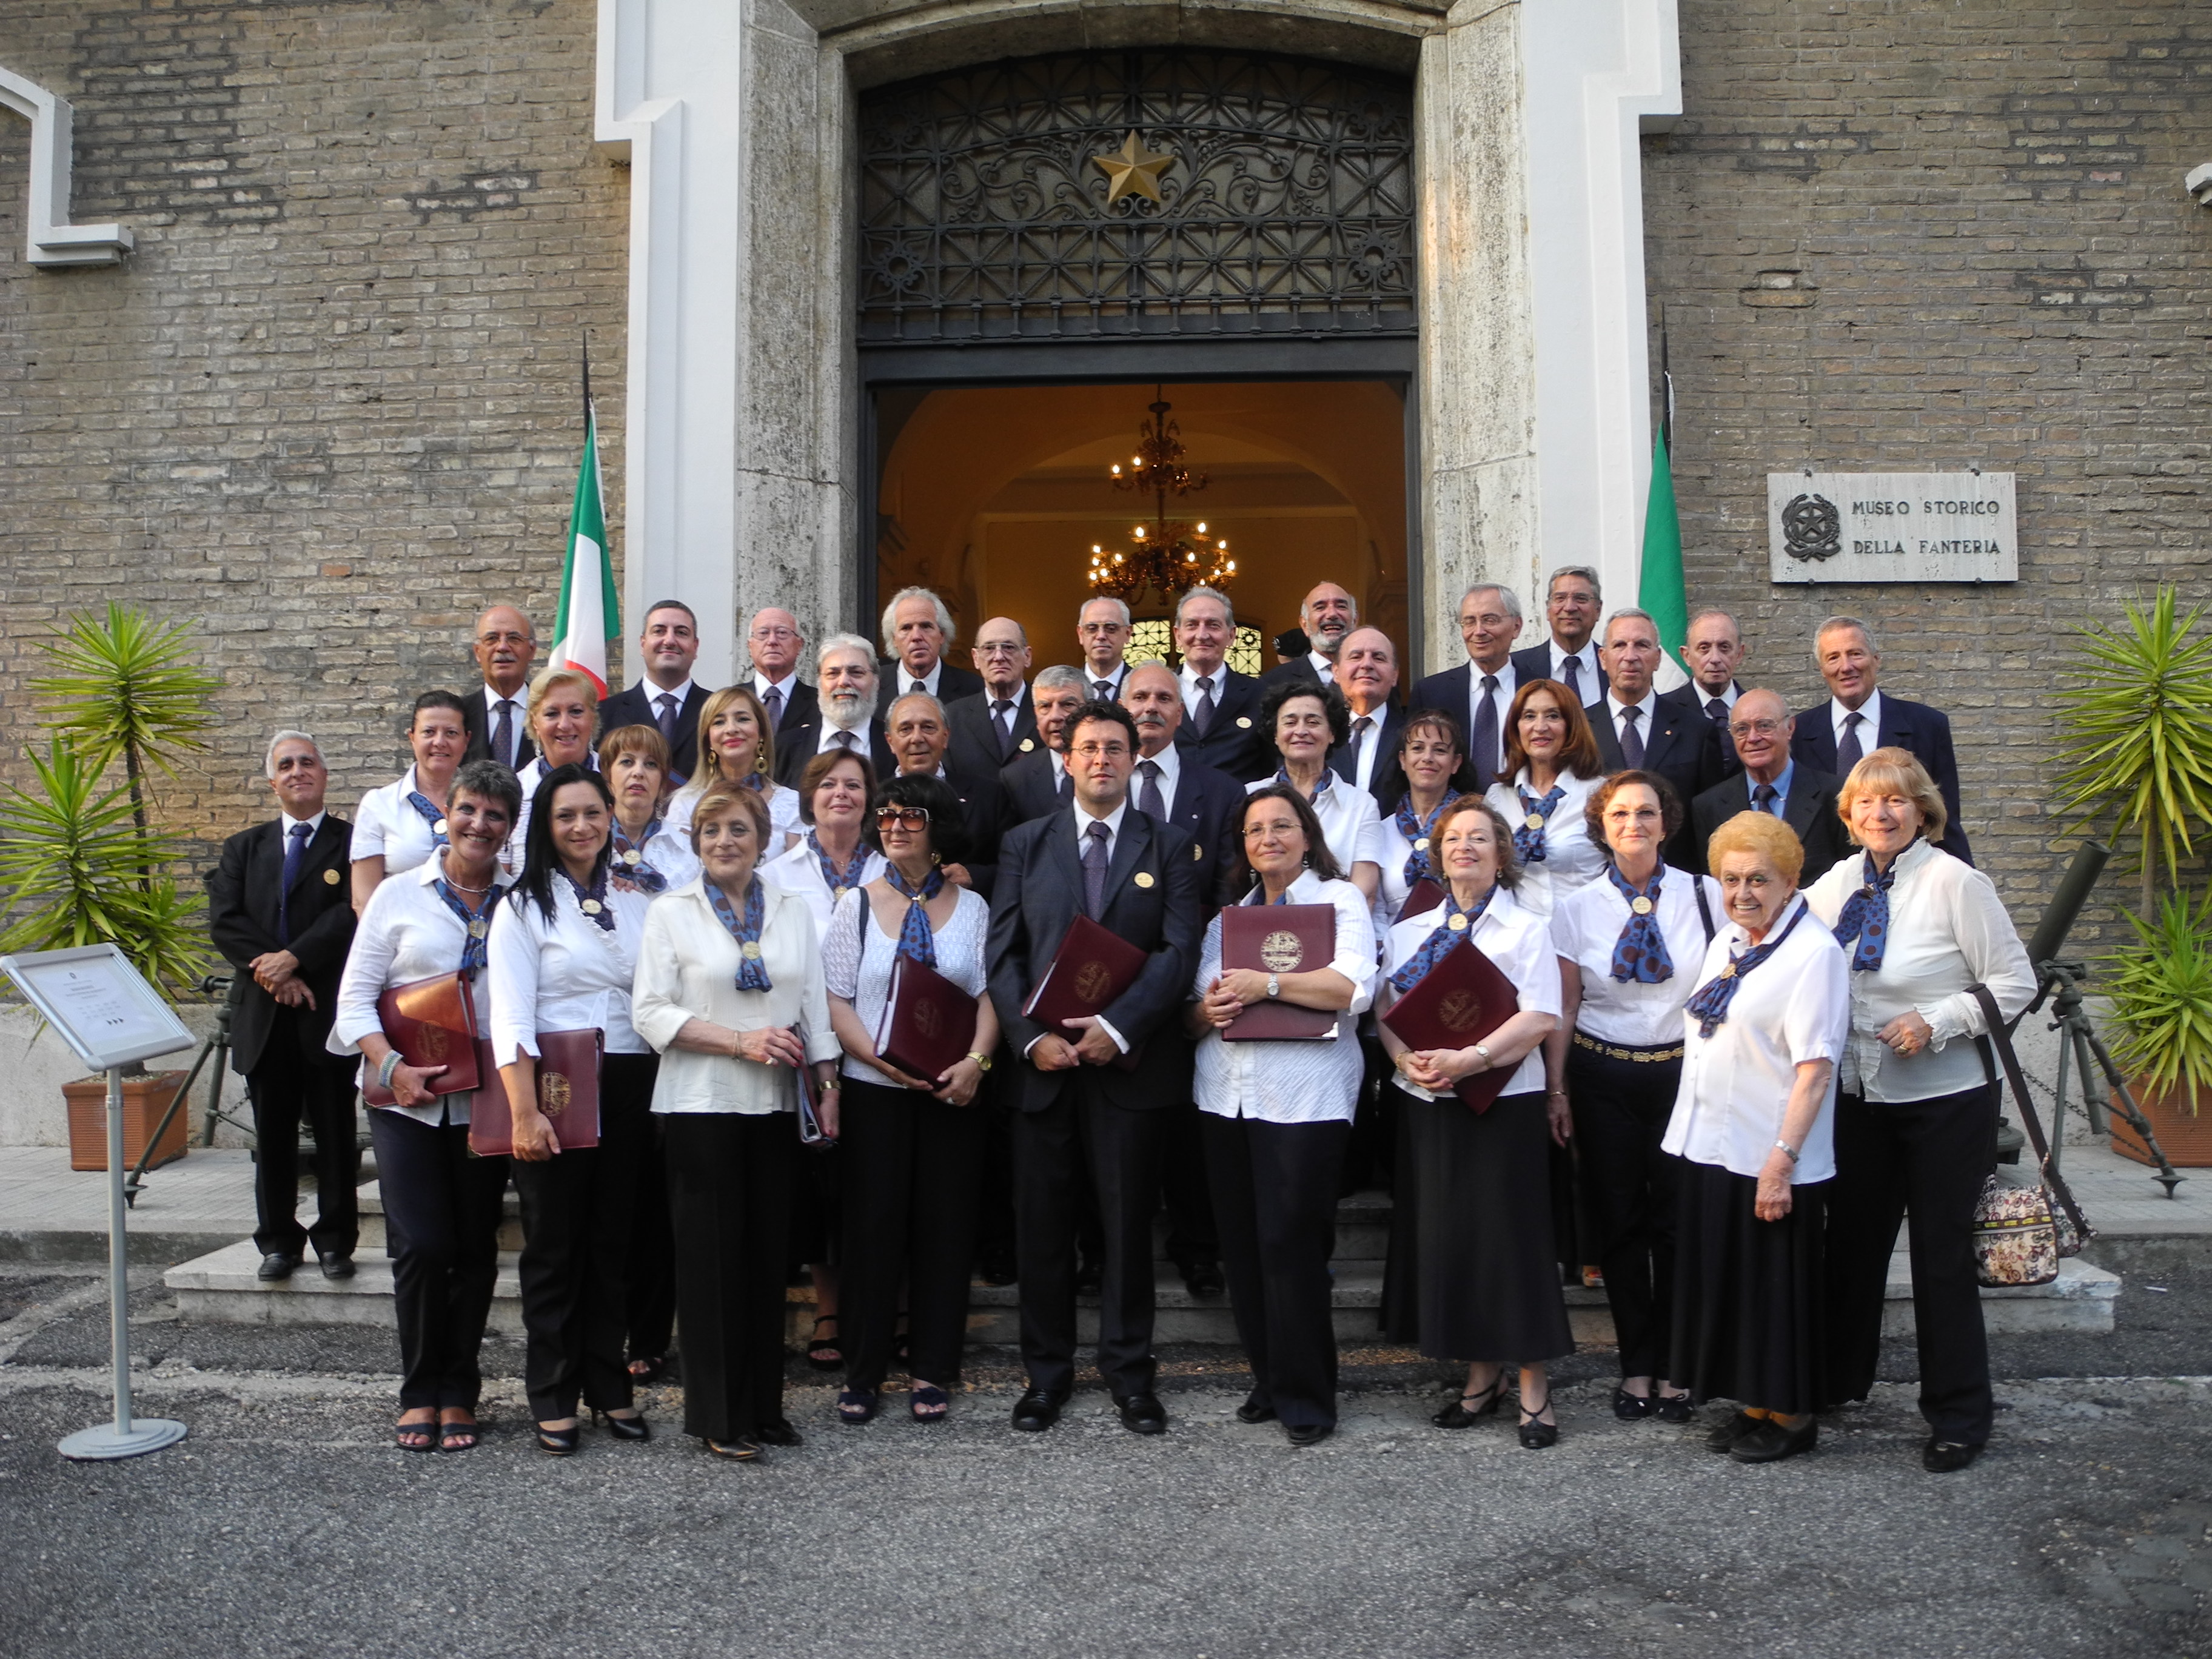 18 luglio 2013 - Il Coro Polifonico "Salvo D'Acquisto" al Museo Storico della Fanteria, in Roma